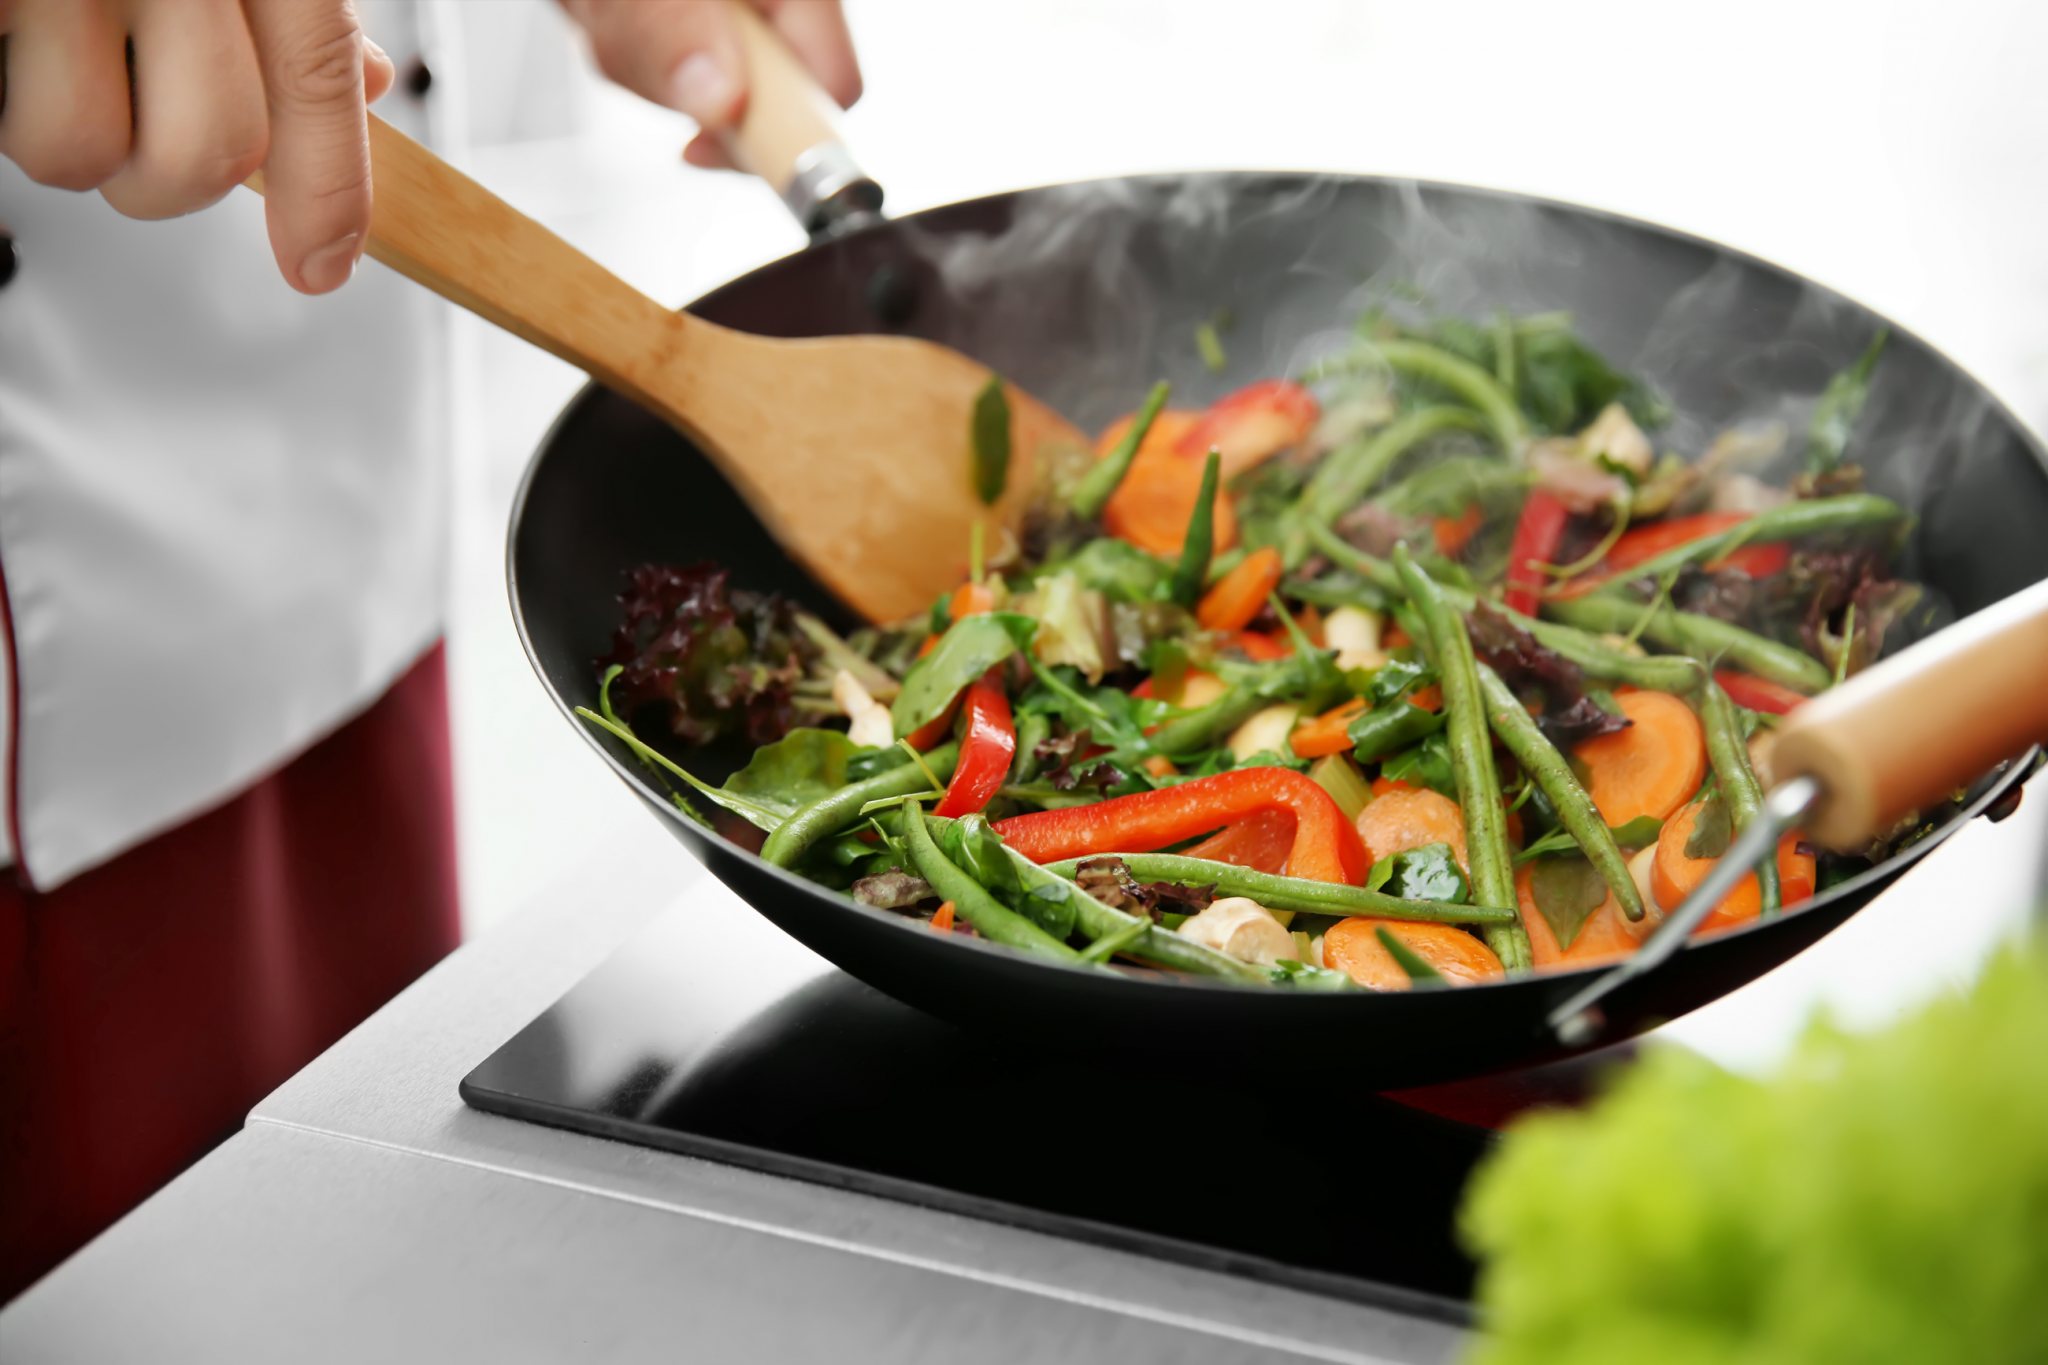 Cần nấu chín thức ăn trước khi ăn để đảm bảo an toàn cho sức khỏe